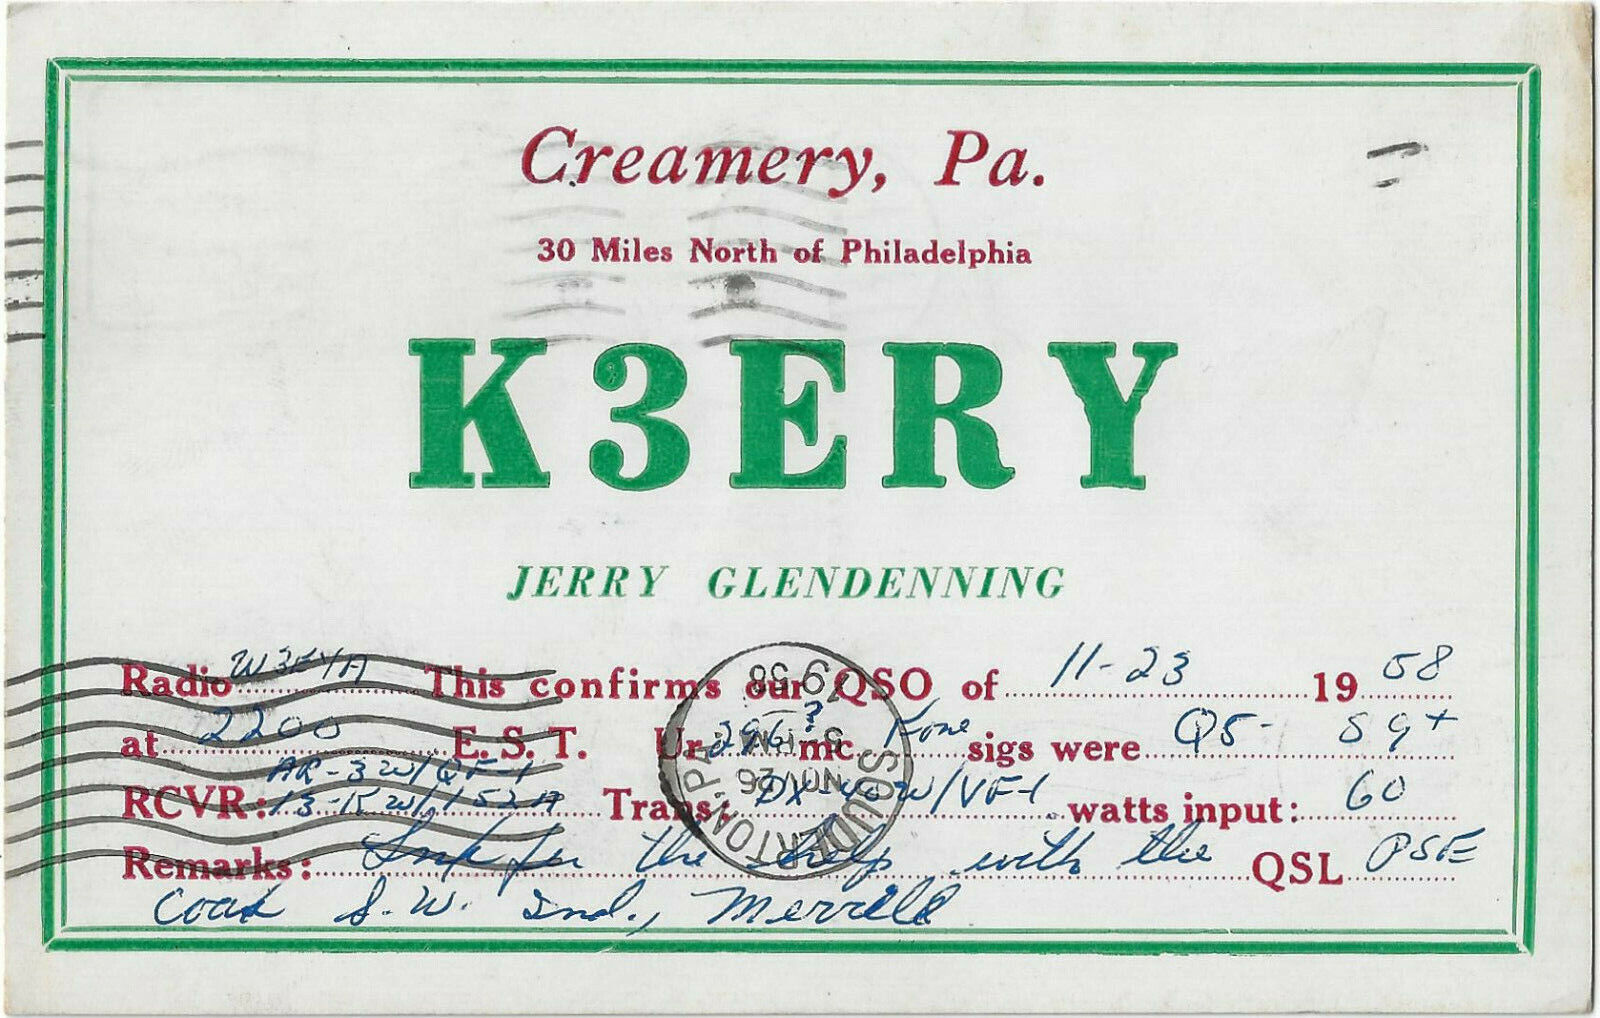 CREAMERY, PA. * AMATURE RADIO STATION K3ERY * 11-23-1958